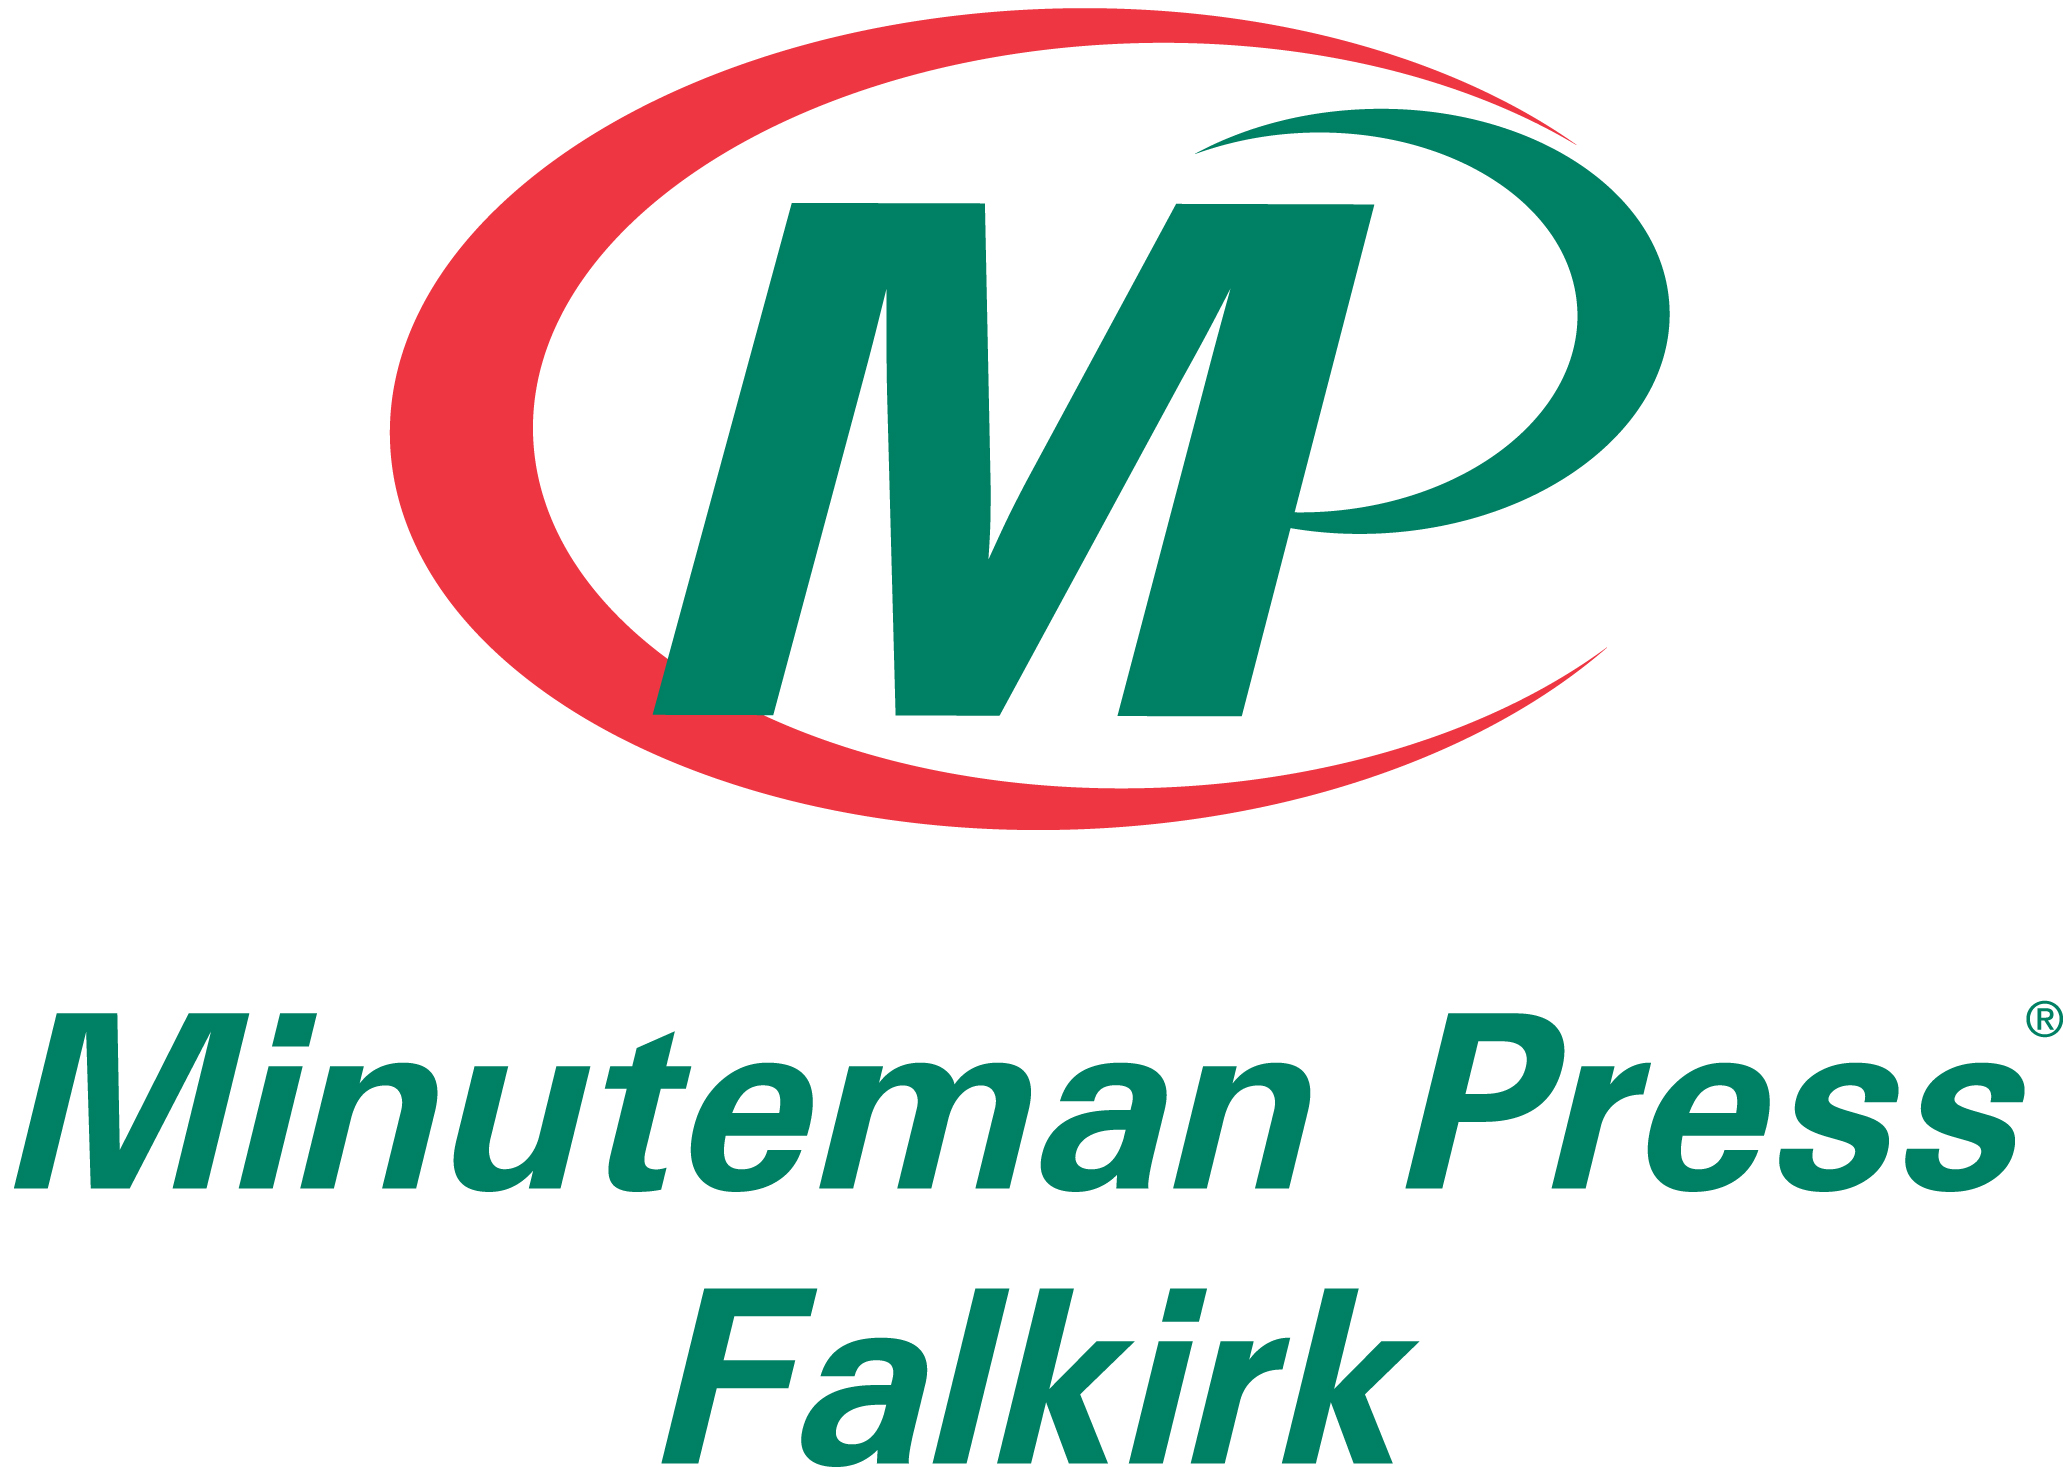 Minuteman Press Falkirk